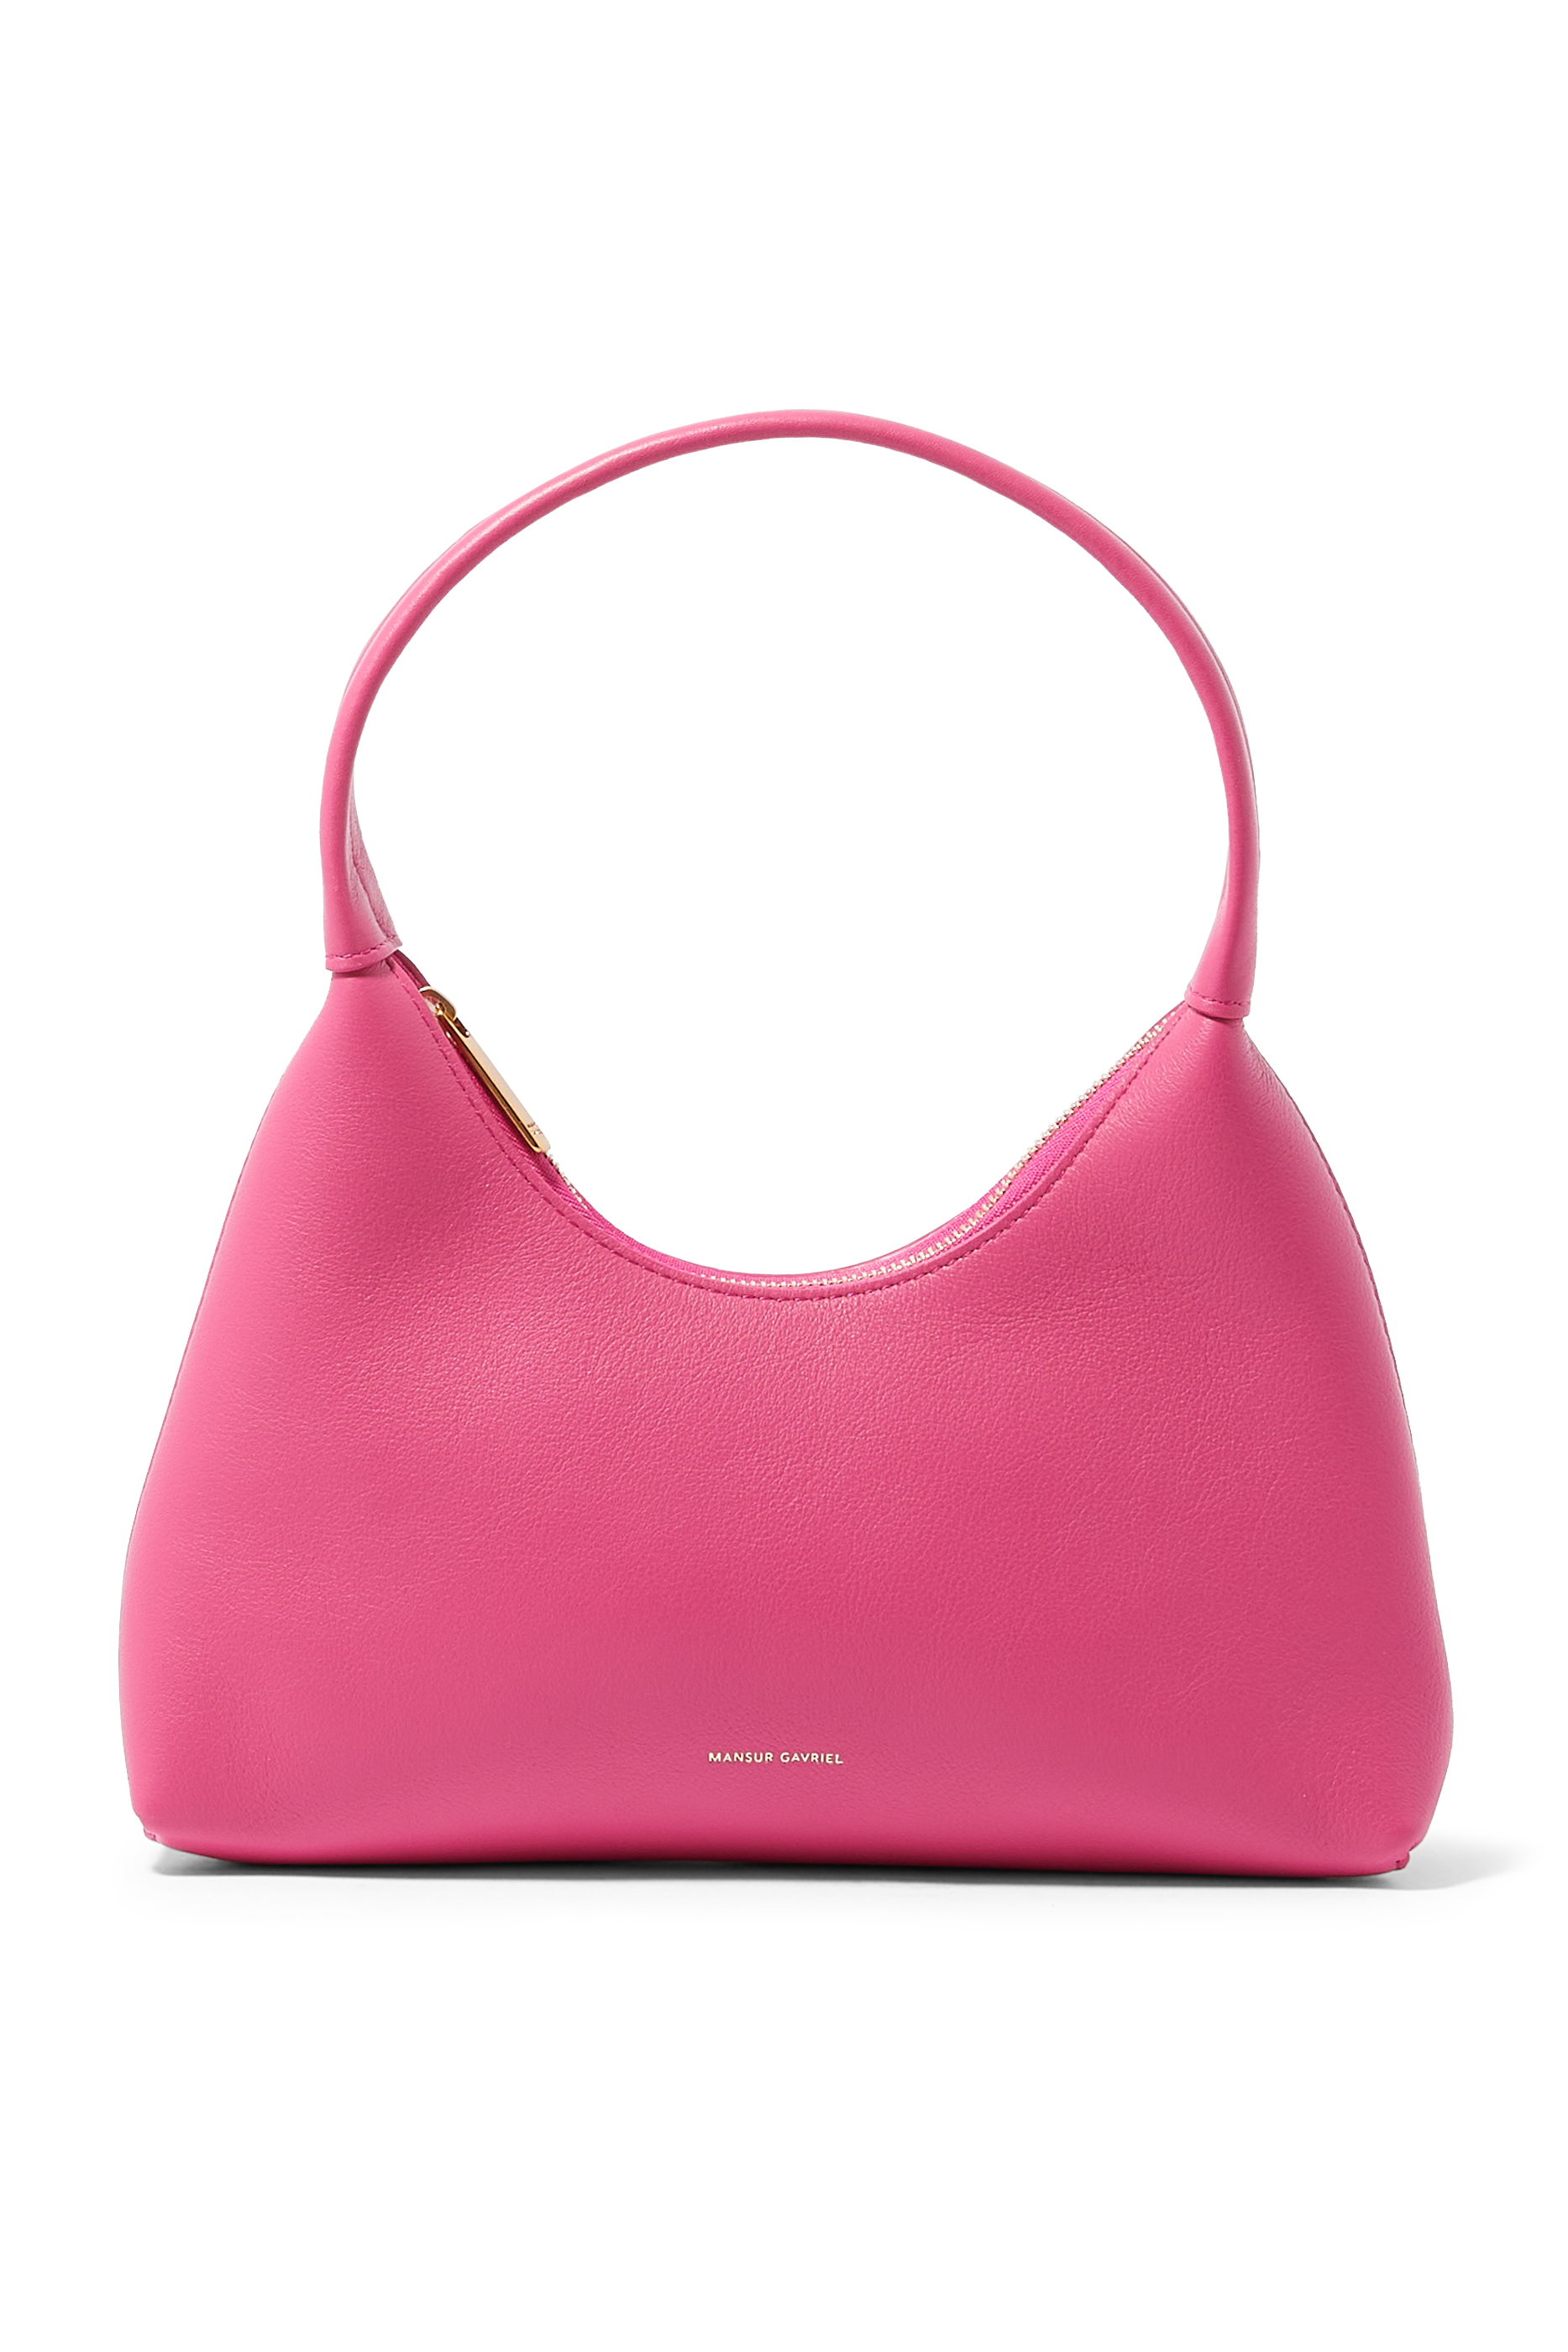 Buy Mansur Gavriel Mini Candy Hobo Bag for Womens | Bloomingdale's UAE